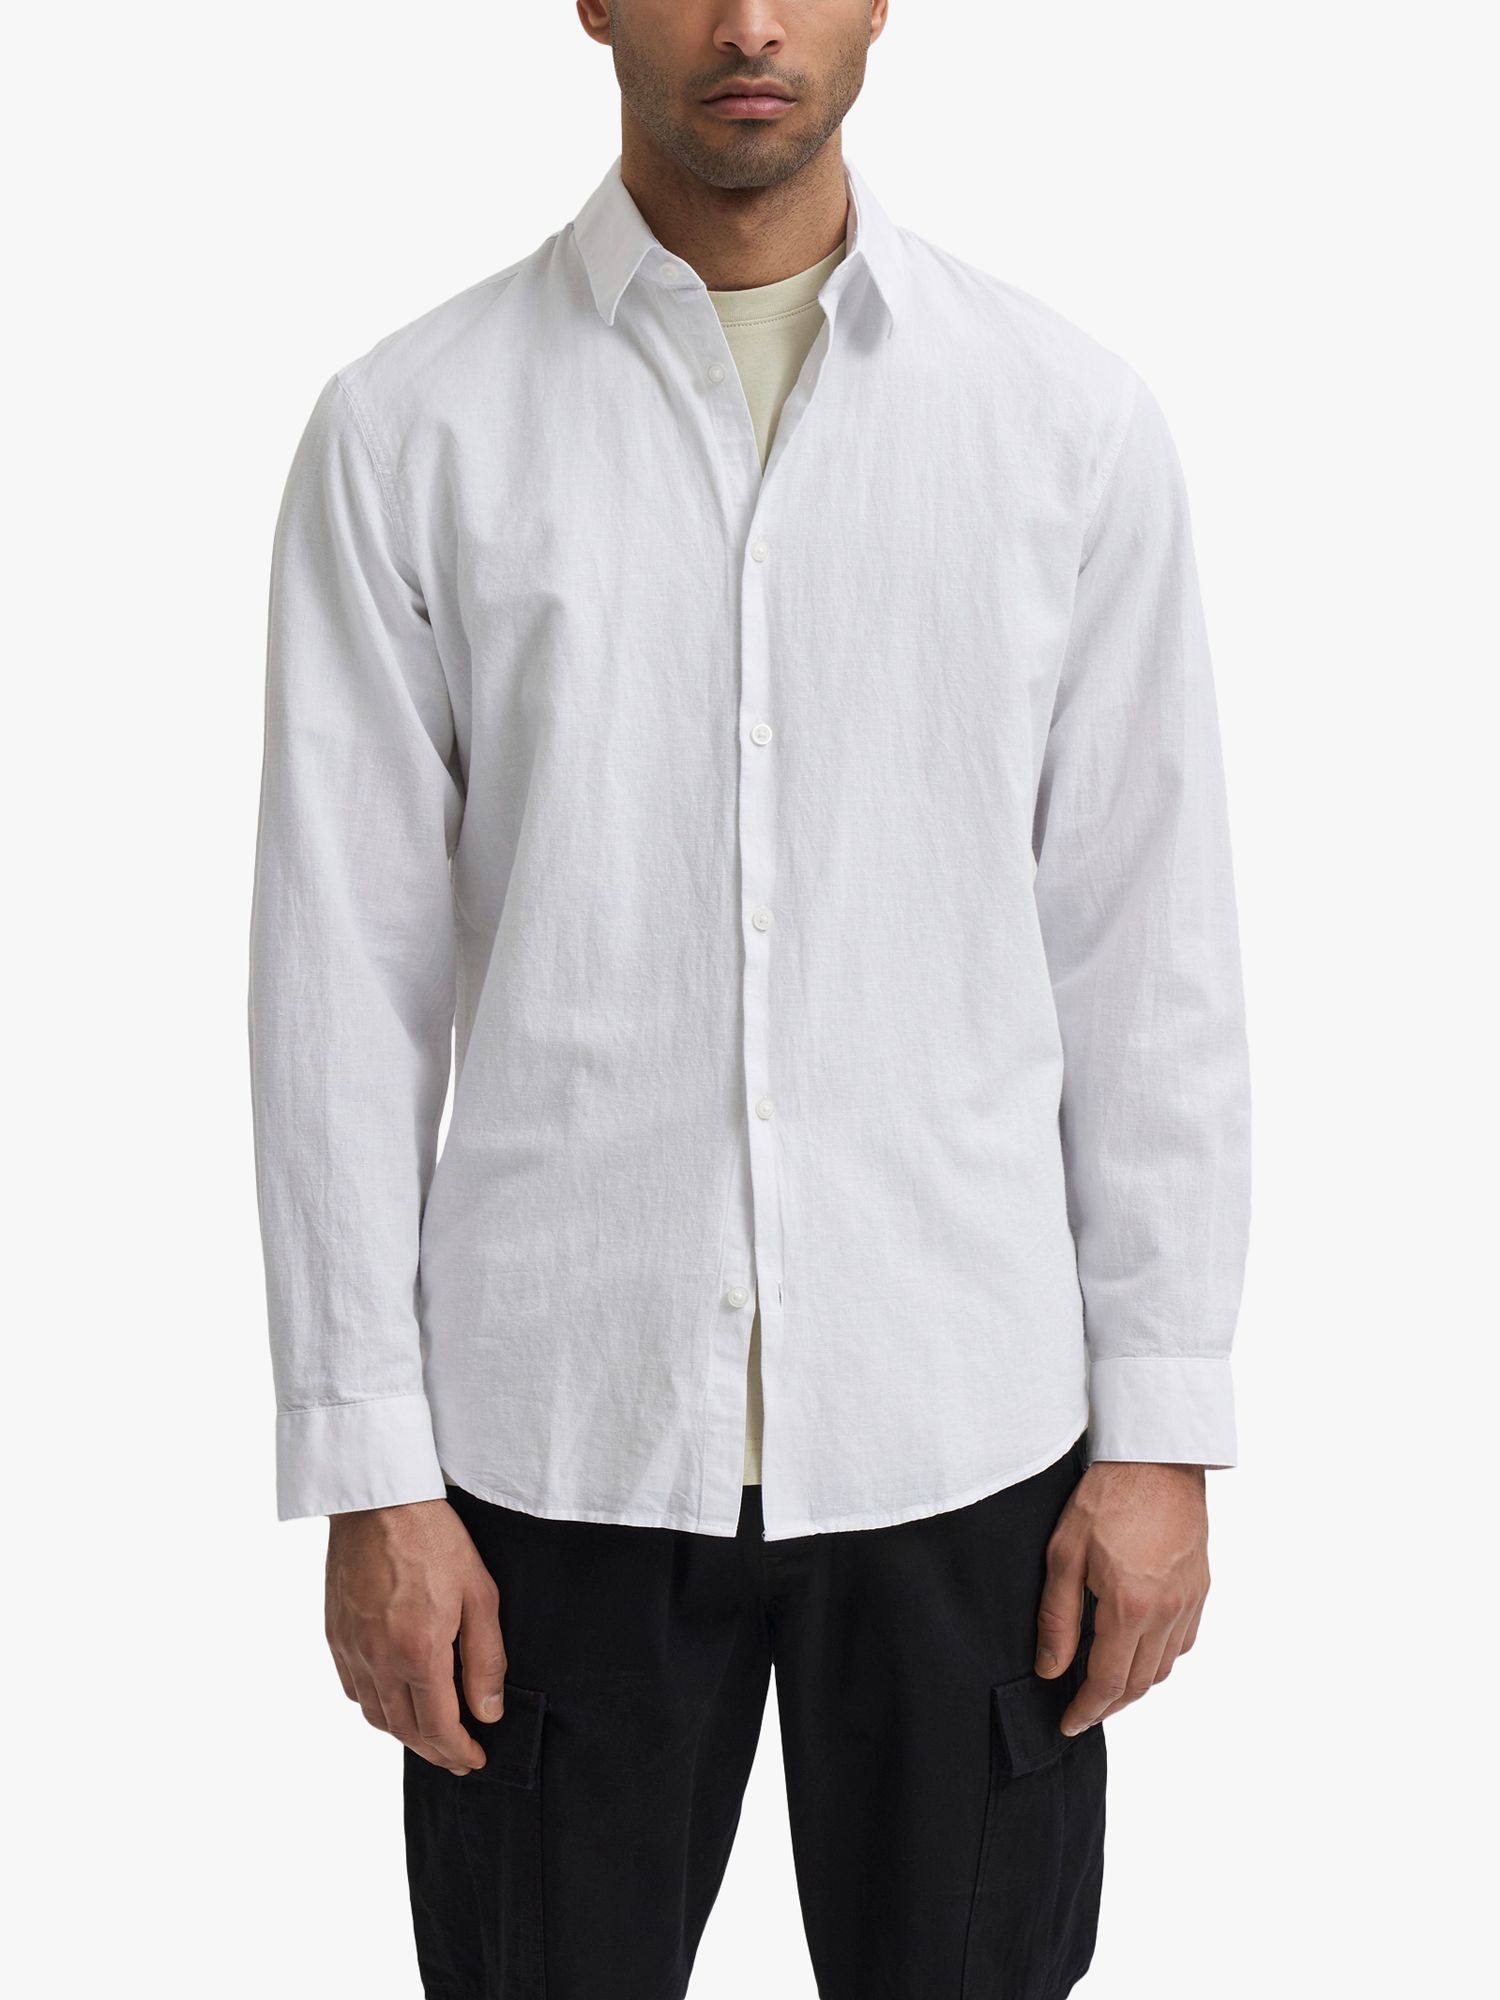 SELECTED HOMME Cotton Linen Blend Shirt, White, L